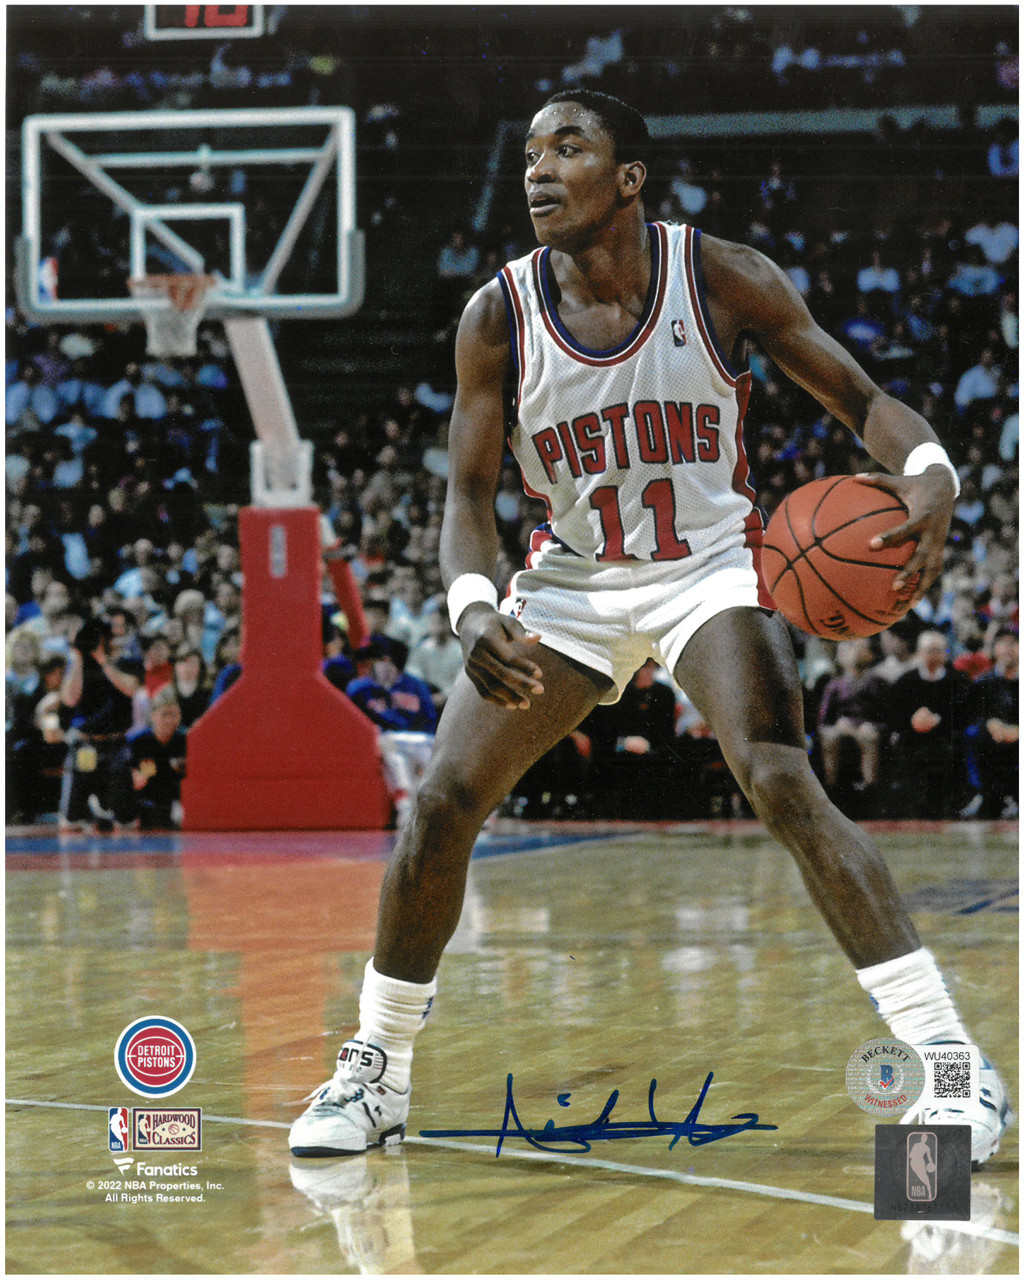 1988/89 Detroit Pistons (NBA Champions!) Team Signed Basketball BAS LOA